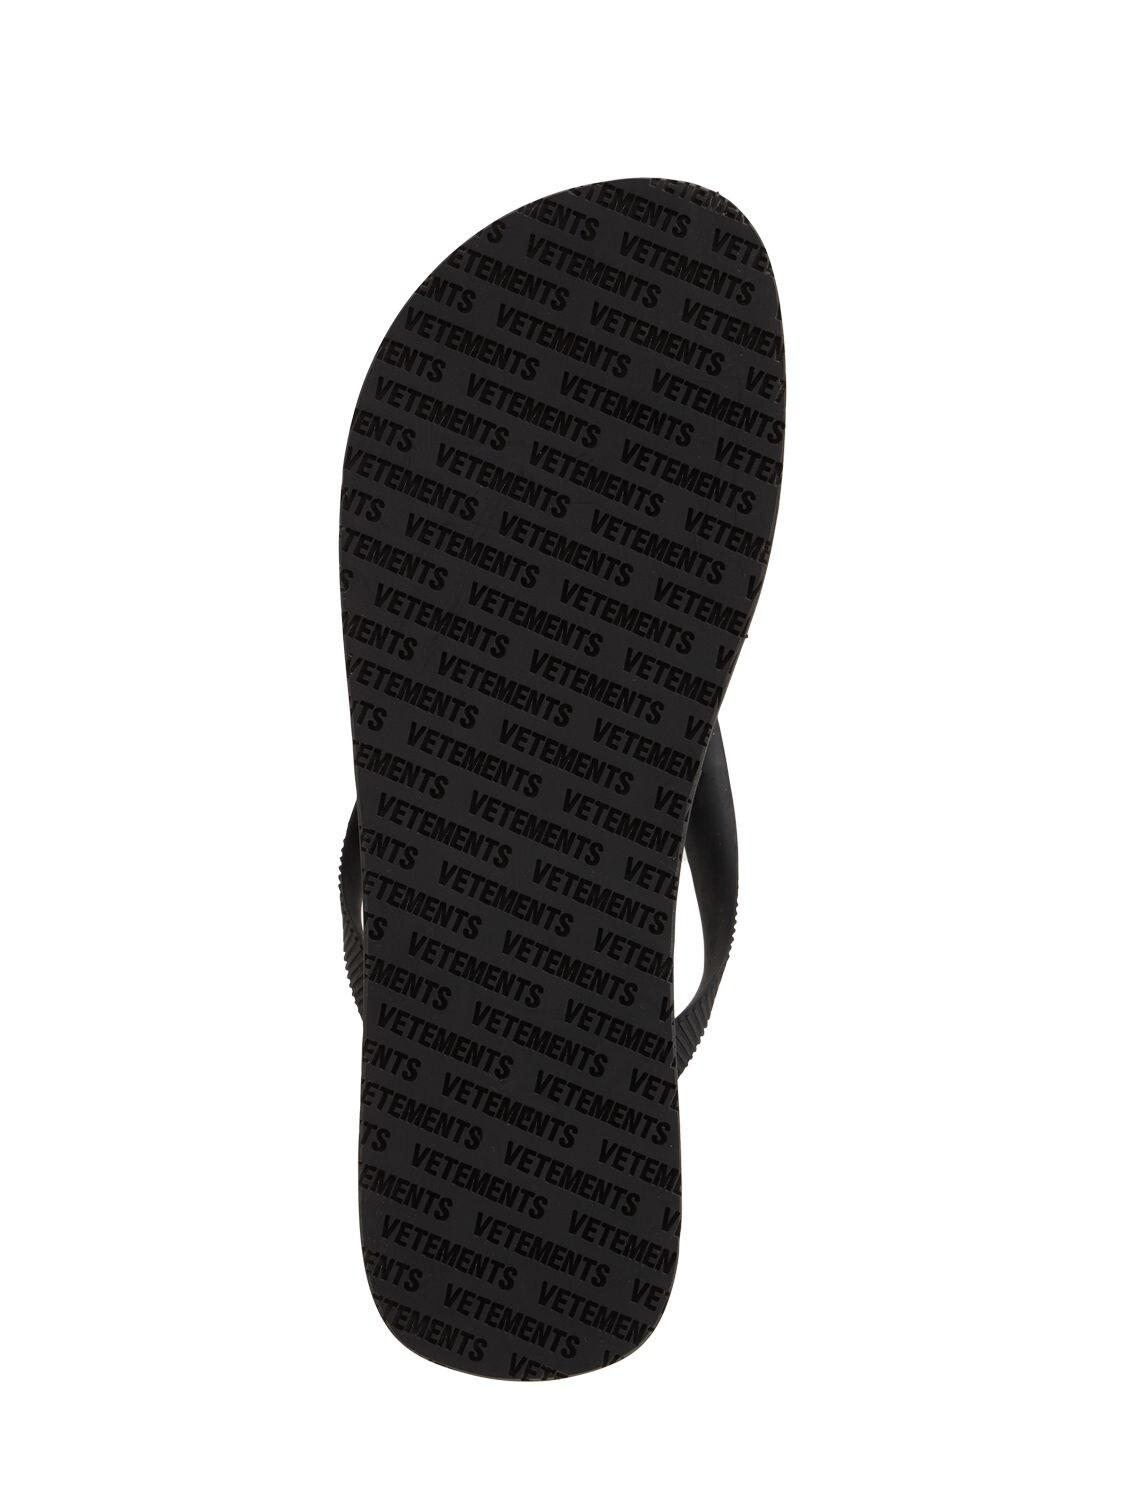 Vetements Logo Flip Flops in Black/White (Black) for Men - Lyst